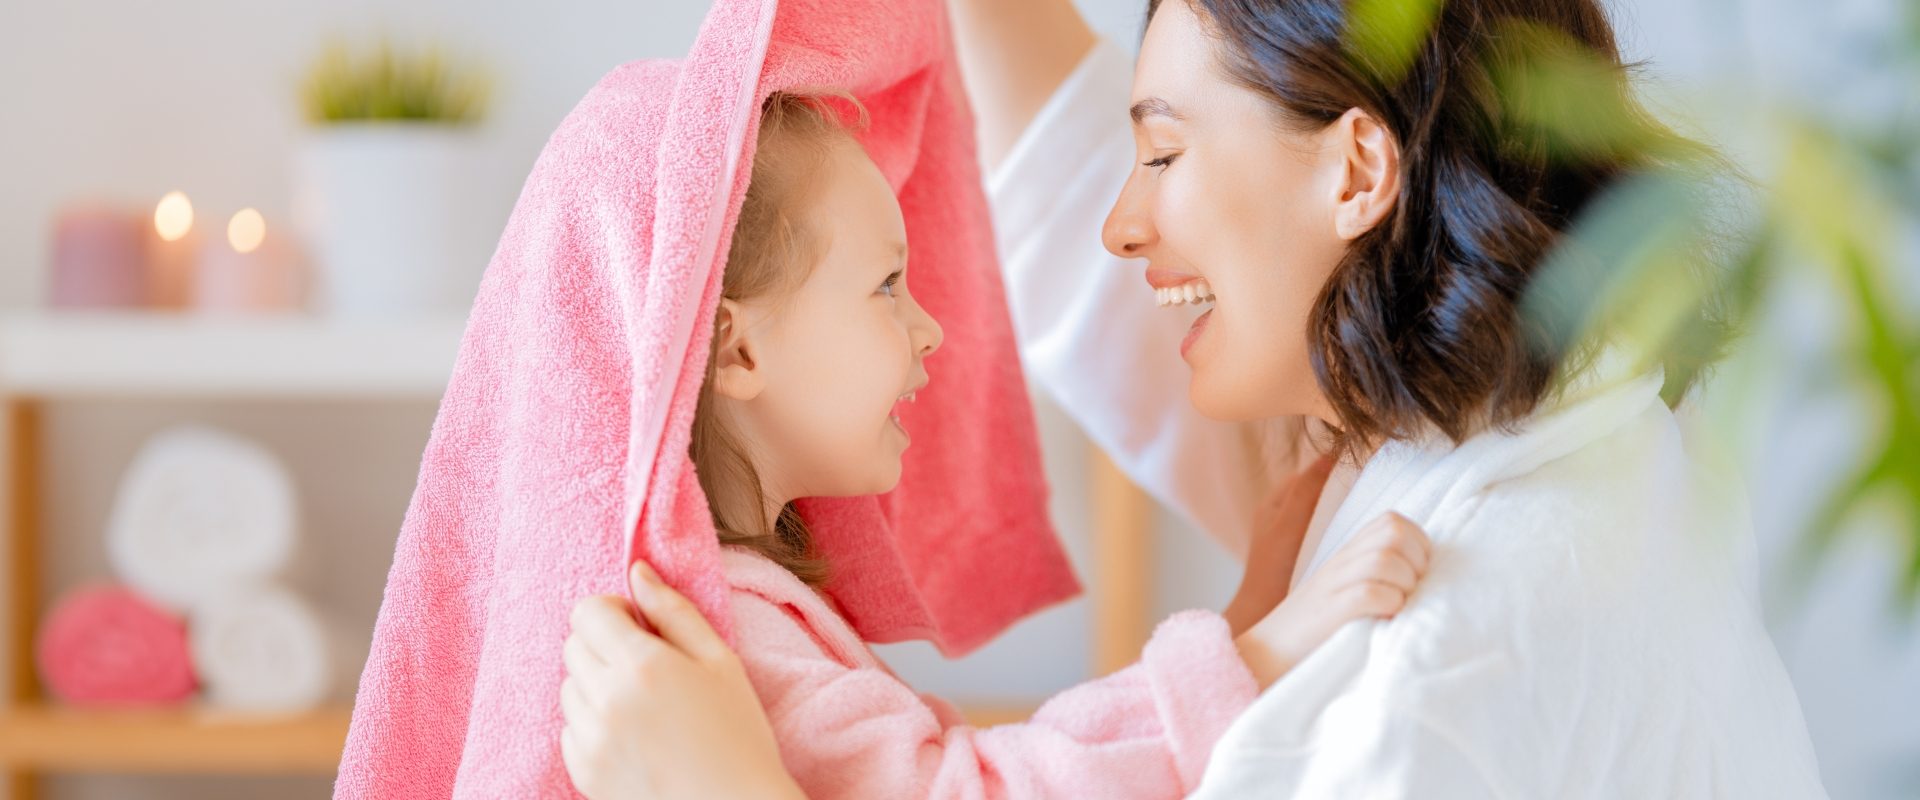 Atopowe zapalenie skóry - jak leczyć? Mama z córką podczas porannej pielęgnacji.